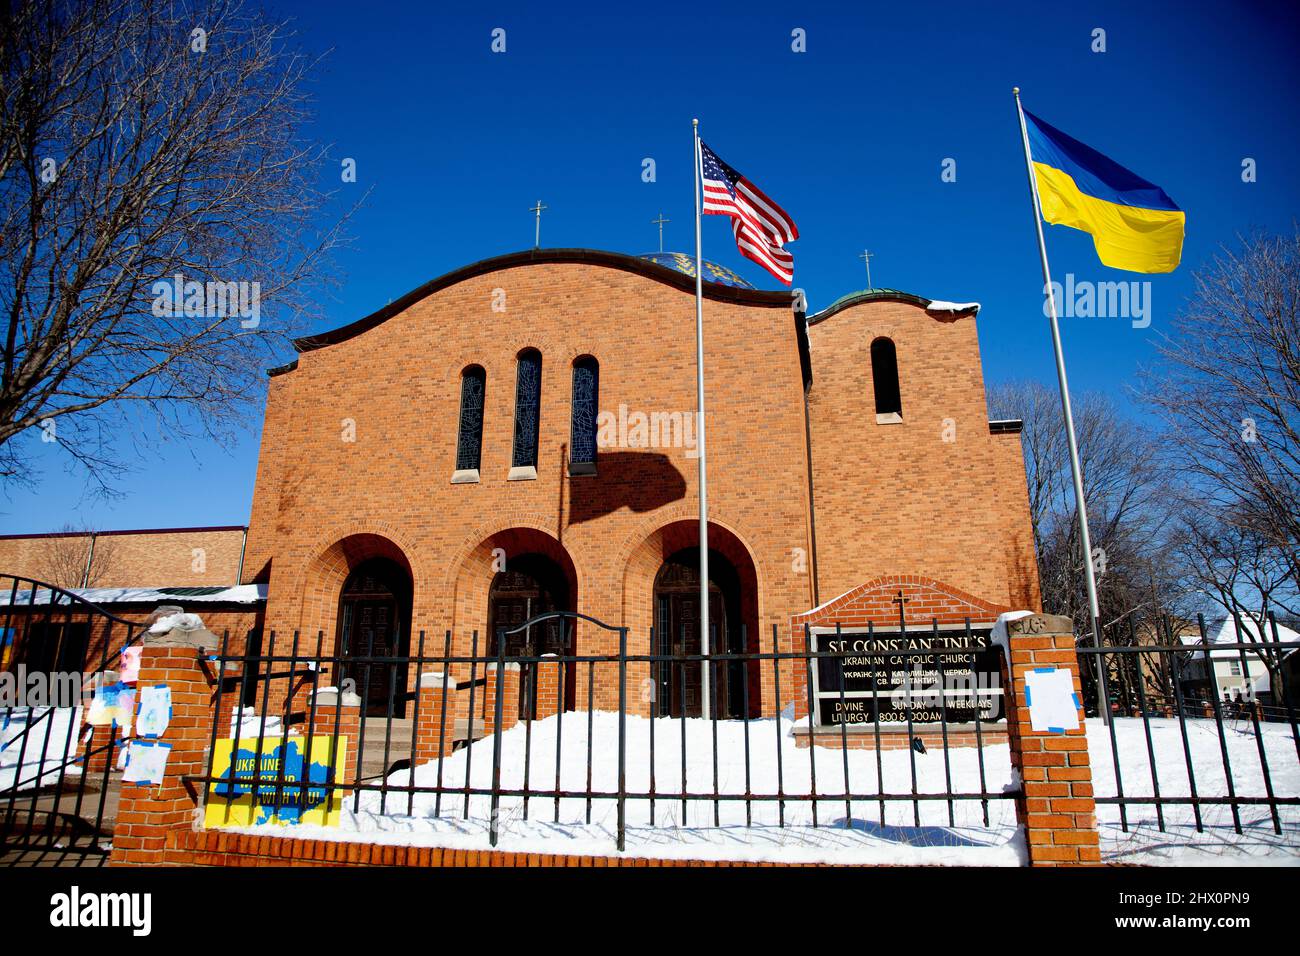 St. Constantine Ukrainische katholische Kirche mit sowohl der Ukraine und amerikanischen Flagge fliegen zusammen, die Unterstützung zeigt. Minneapolis Minnesota, USA Stockfoto